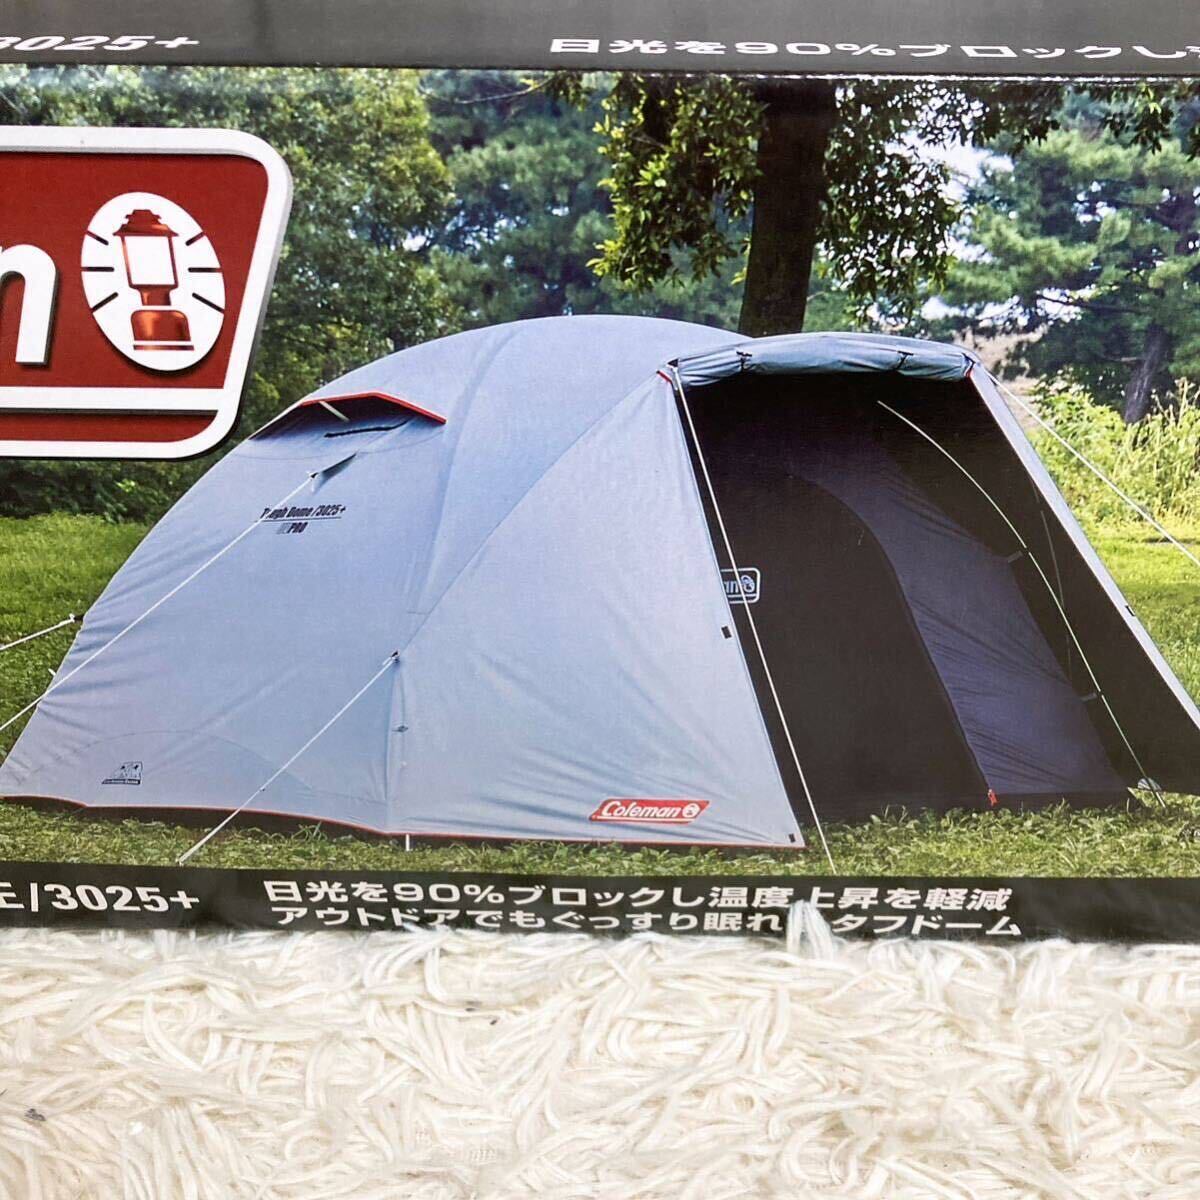 Coleman コールマン アウトドア用品 キャンプ テント タフドーム 3025+ model2000033133の画像3